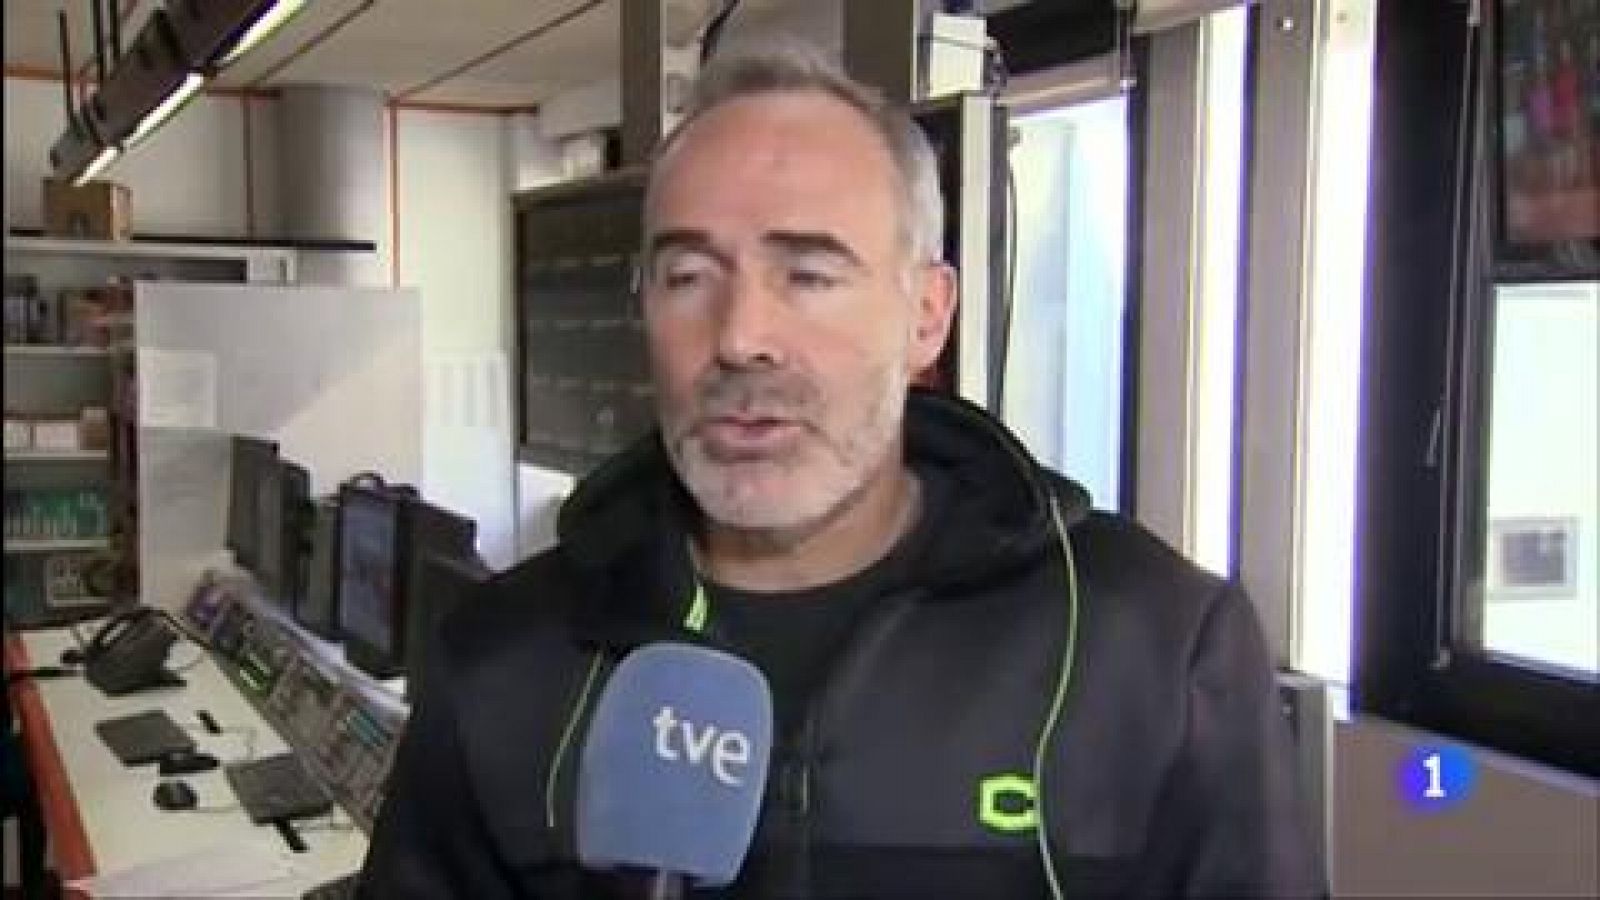 Telediario 1: Álex Corretja: "Será una final muy igualada, España llega justita de fuerzas" | RTVE Play